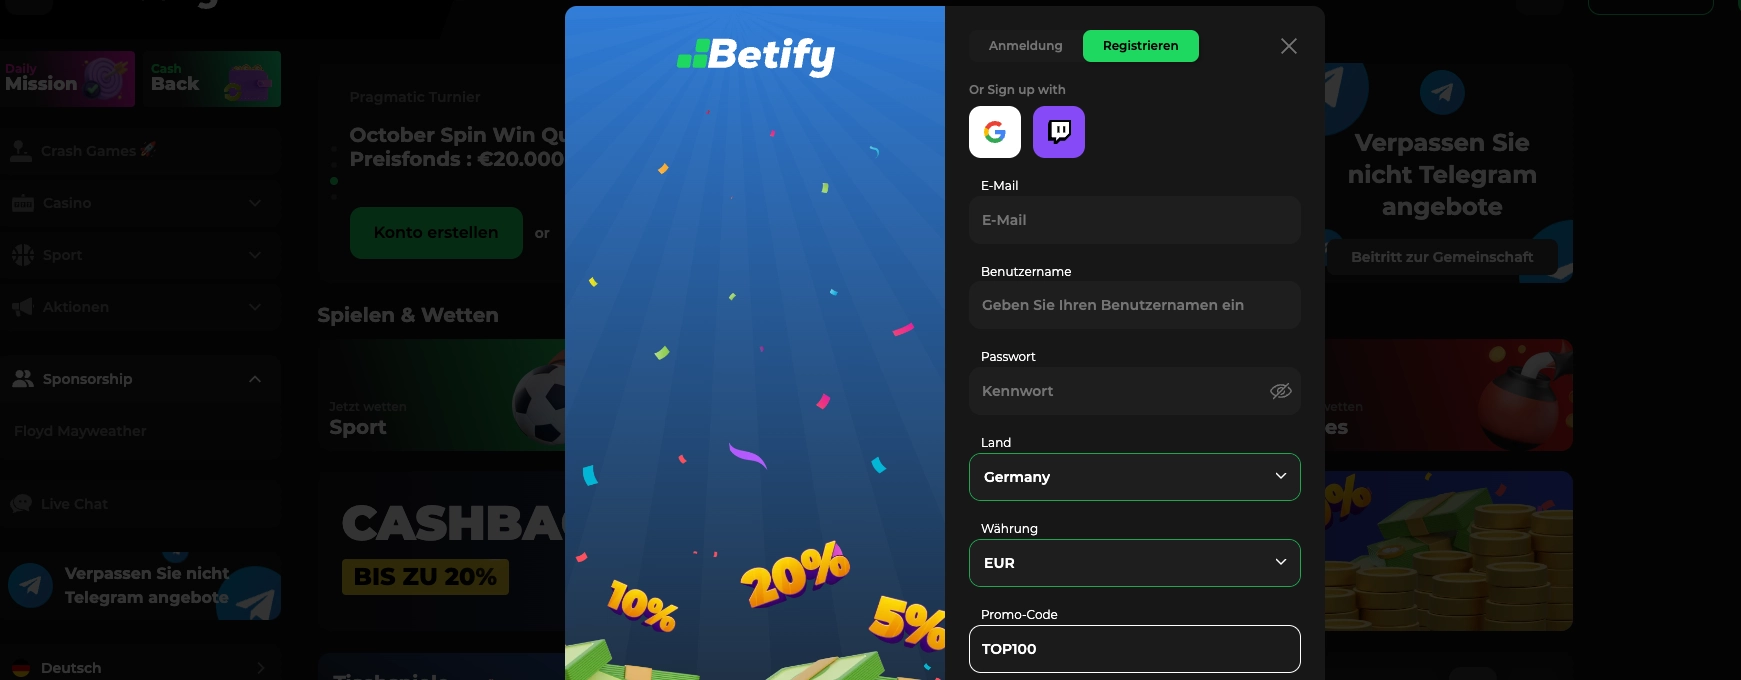 Betify Freispiele ohne Umsatzbedingungen mit Bonus Code TOP100